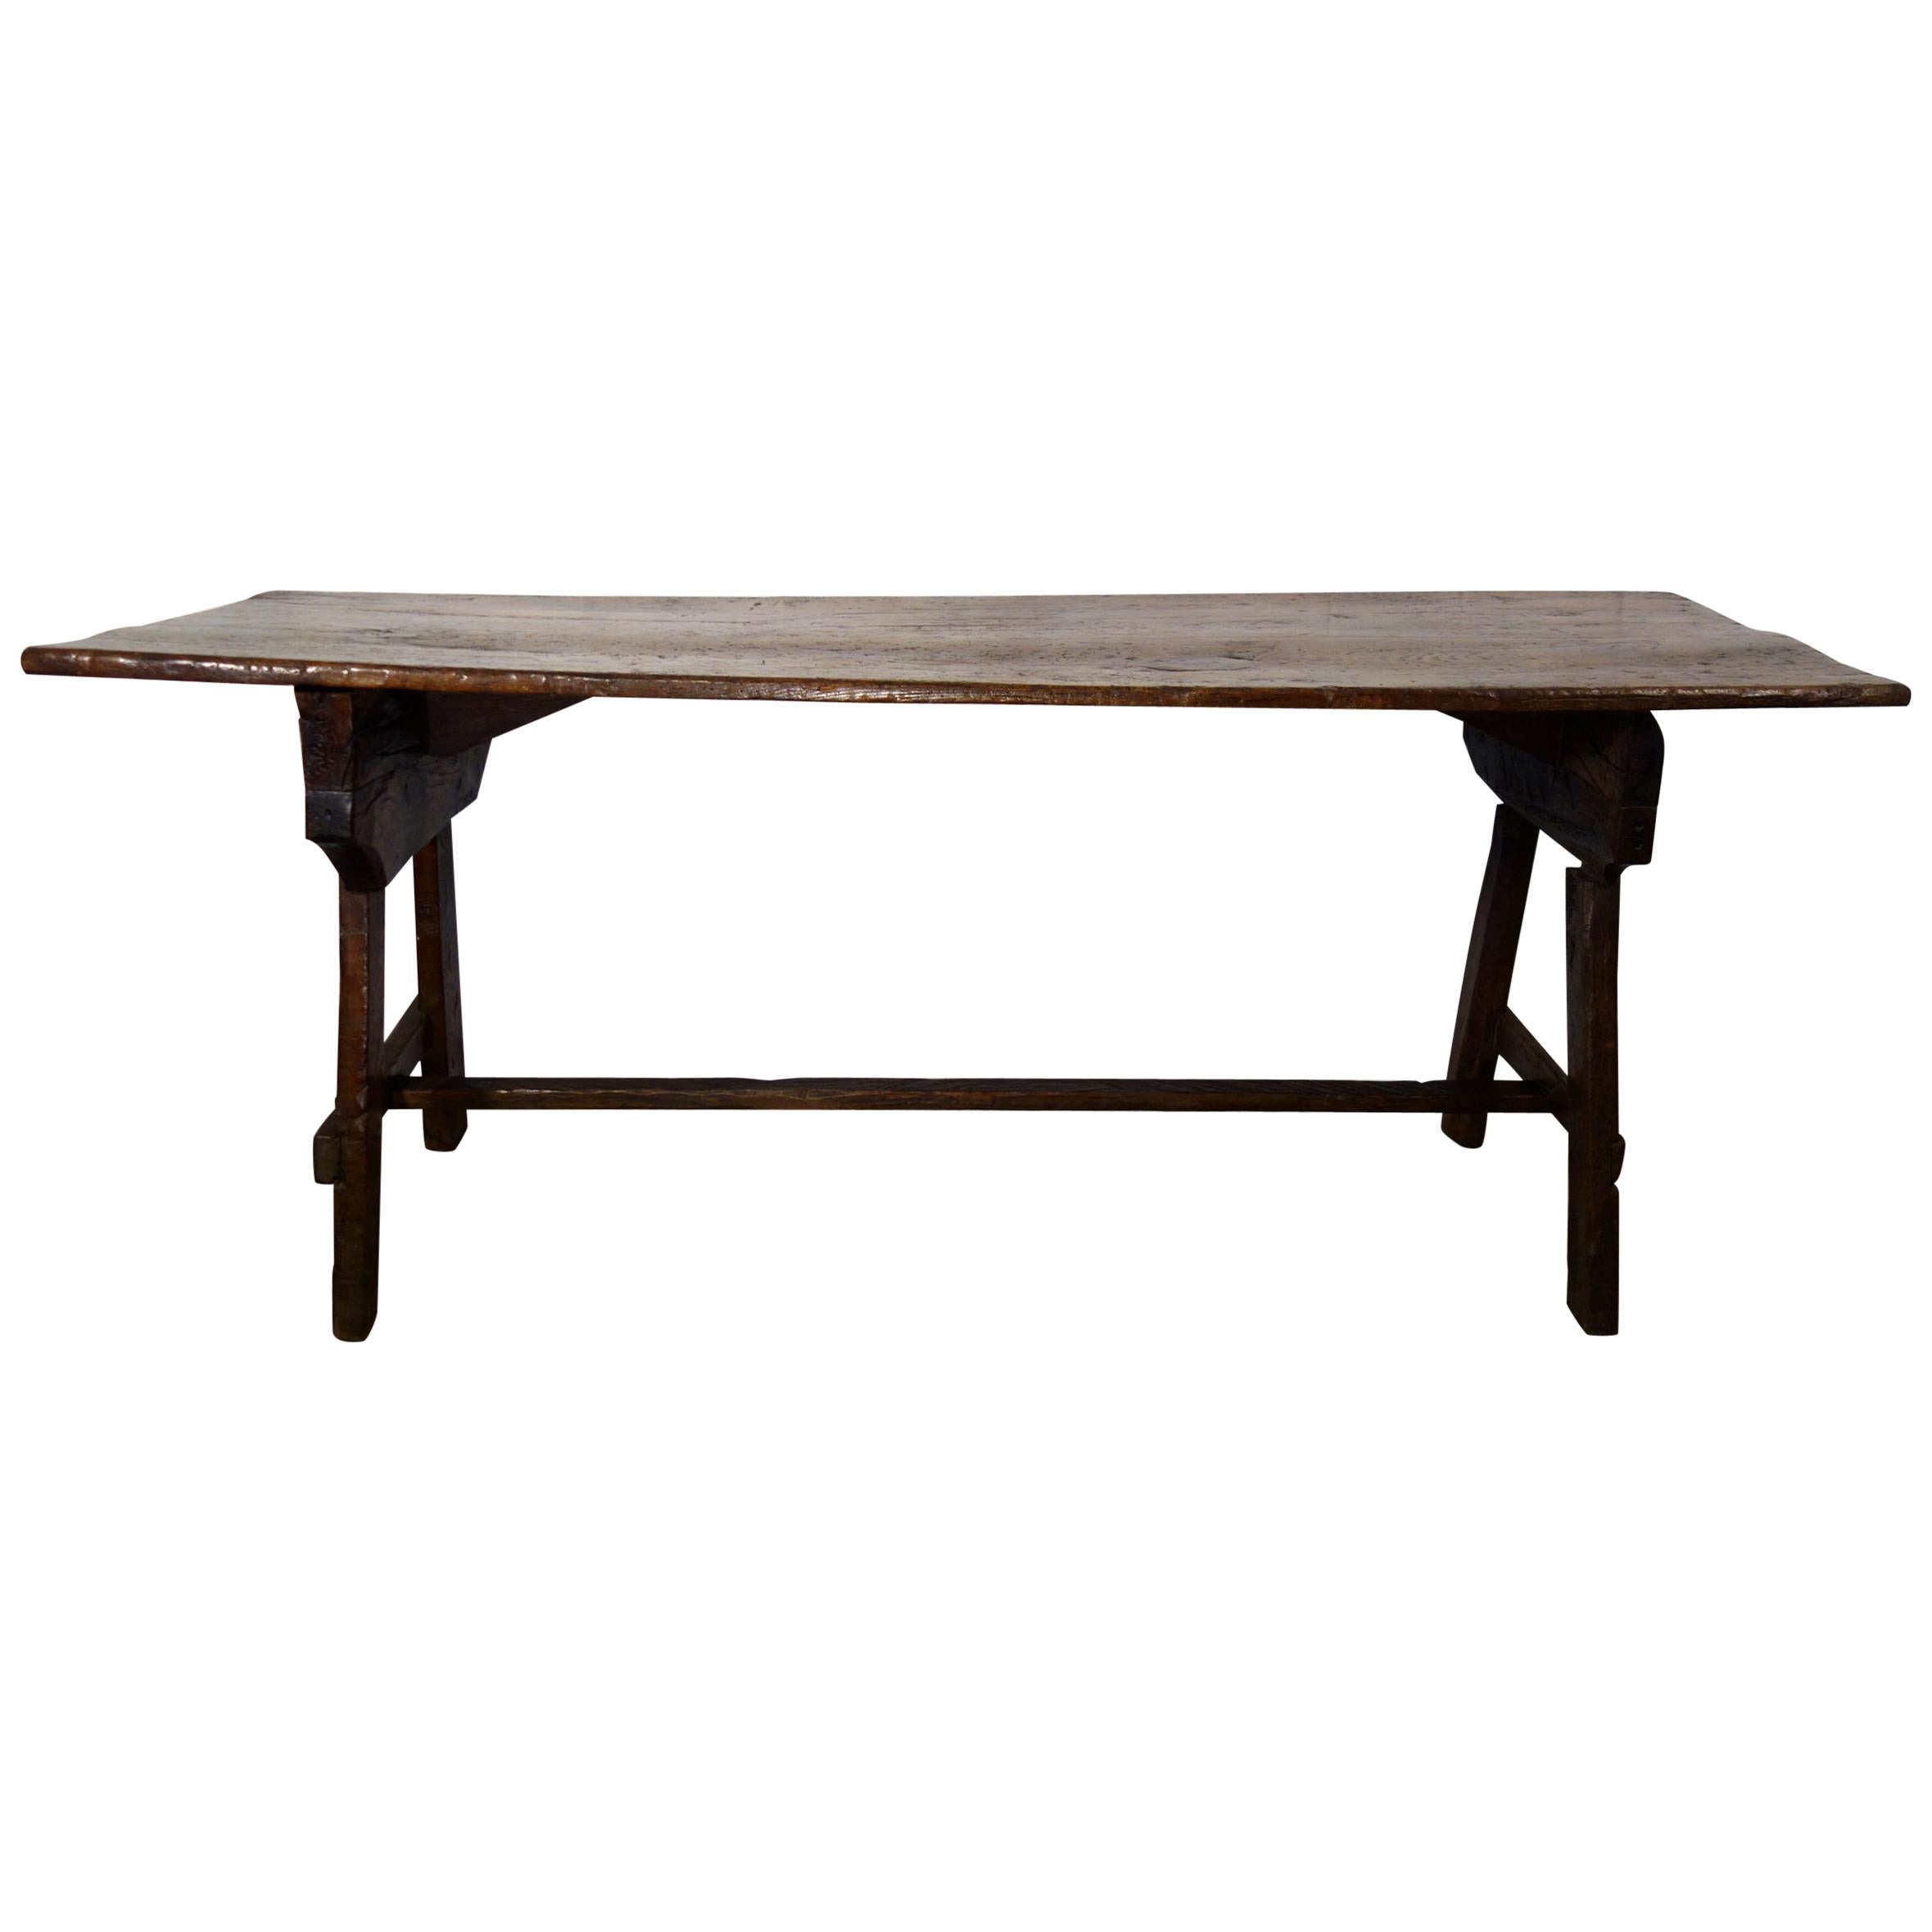 Primitiv-Tisch aus italienischem Kastanienholz im Capretta-Stil des 19. Jahrhunderts, in Reproduktion erhältlich